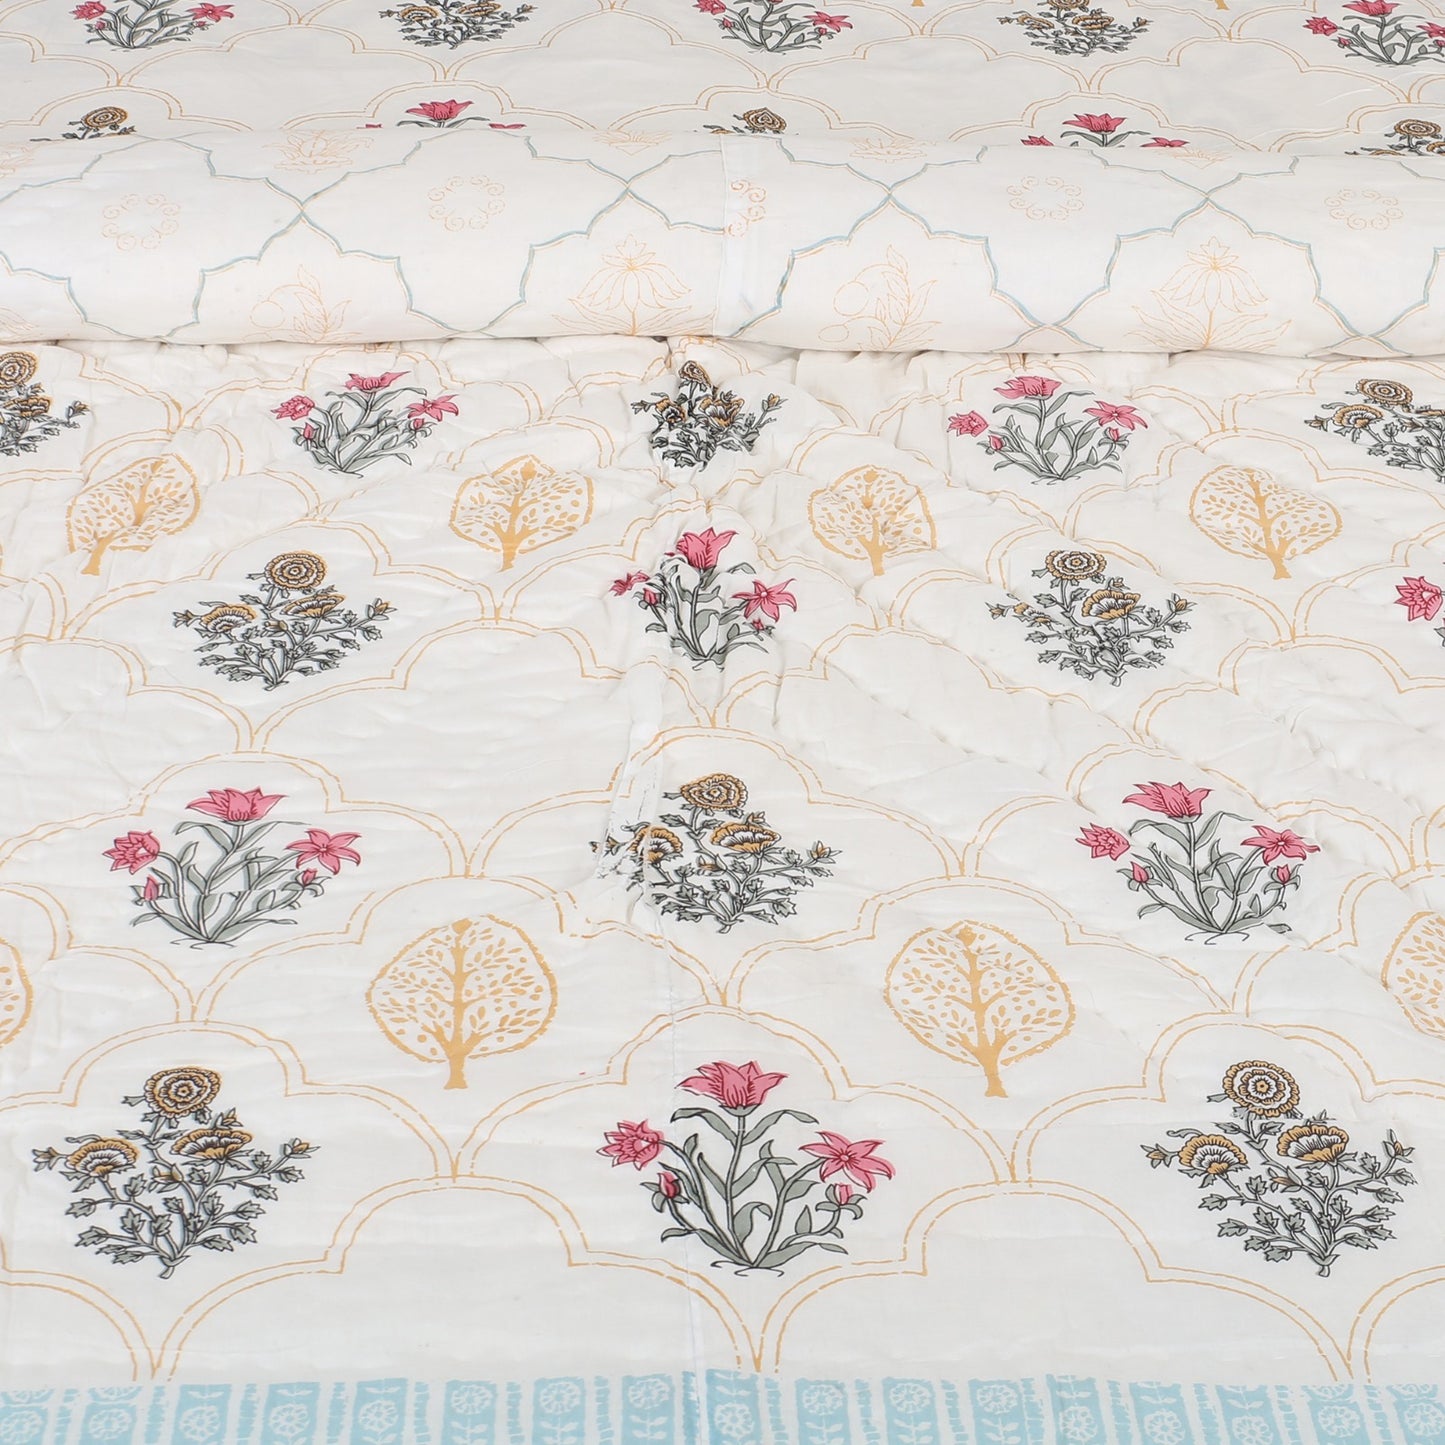 Floral Block Print Bedding Set - Blue (Bedsheet set with Quilt) Gift Set